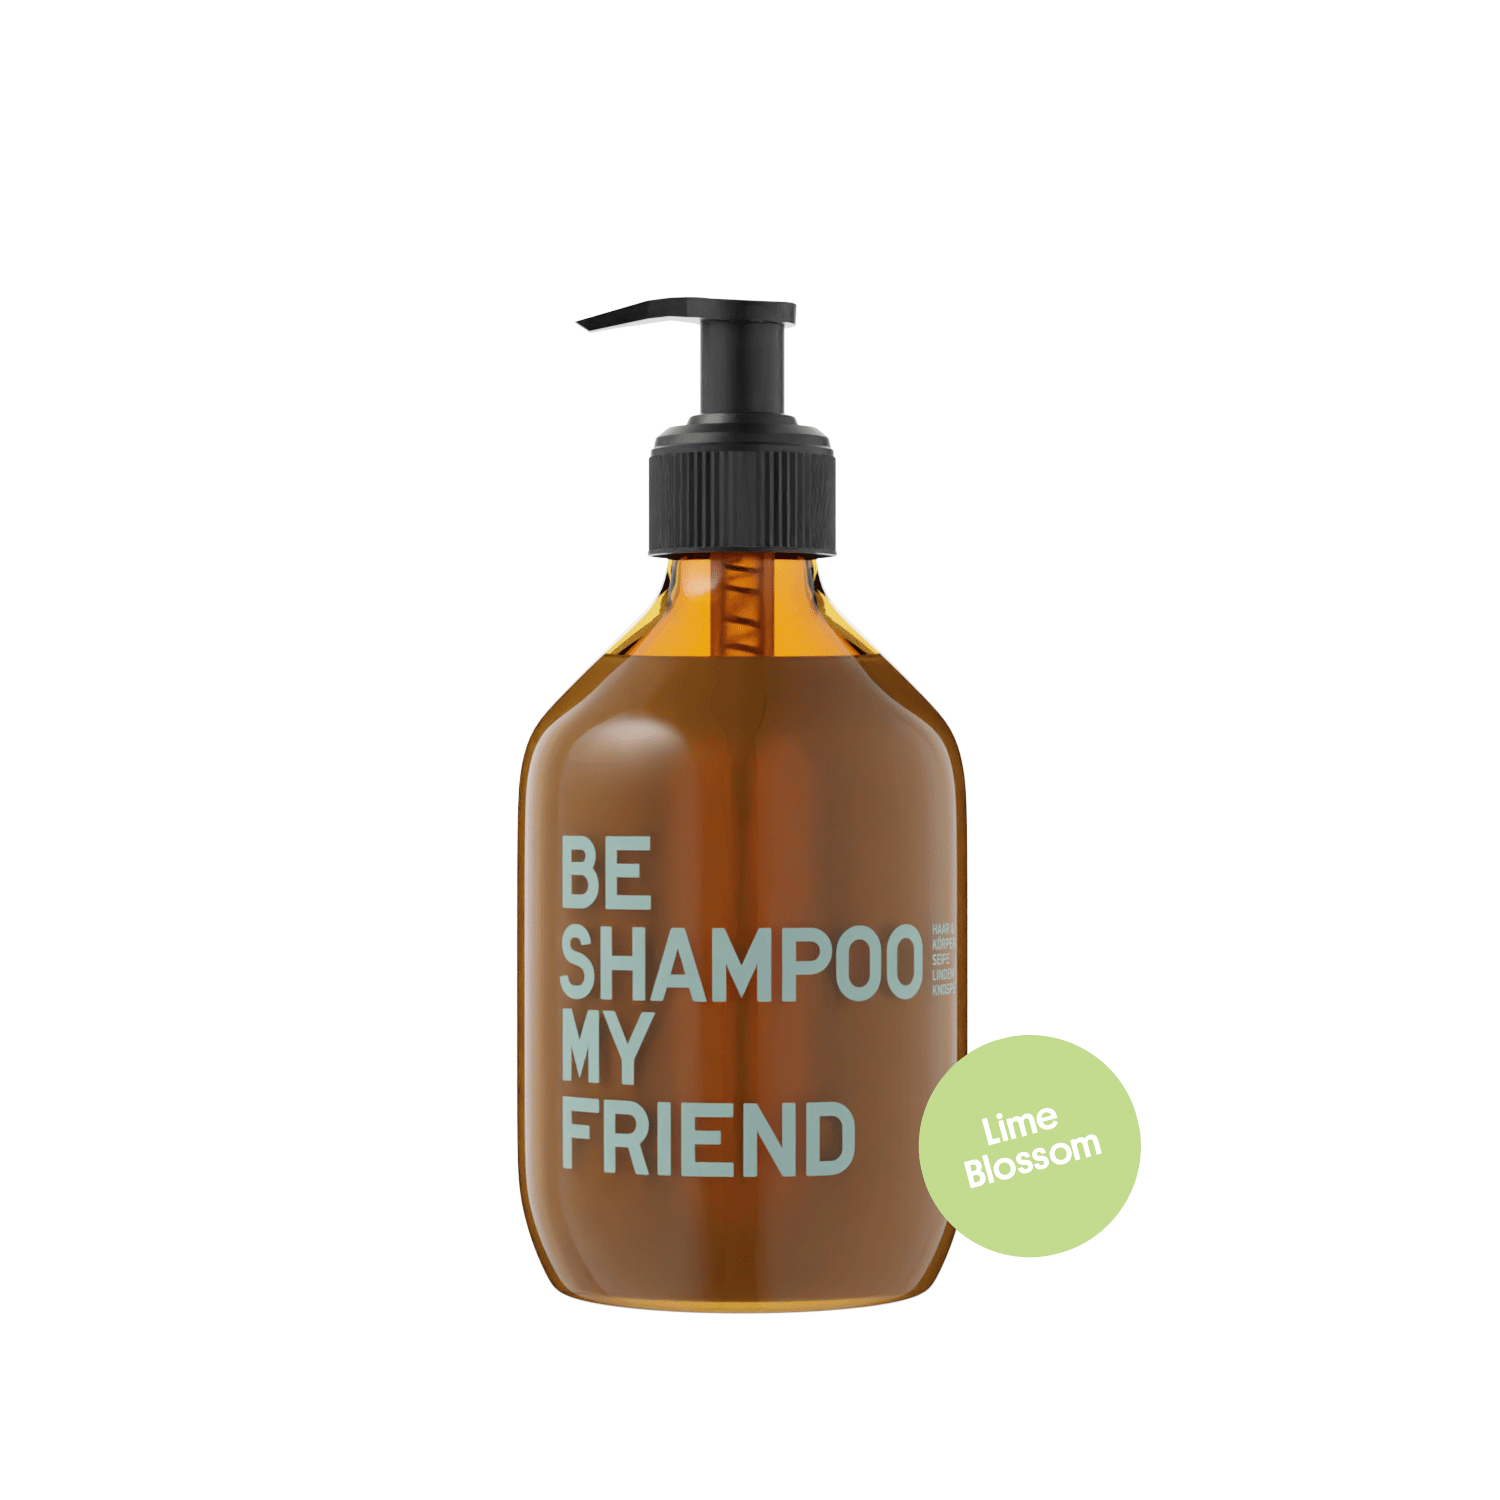 Shampoo - Lindenblüte 200 ml von BE [...] MY FRIEND